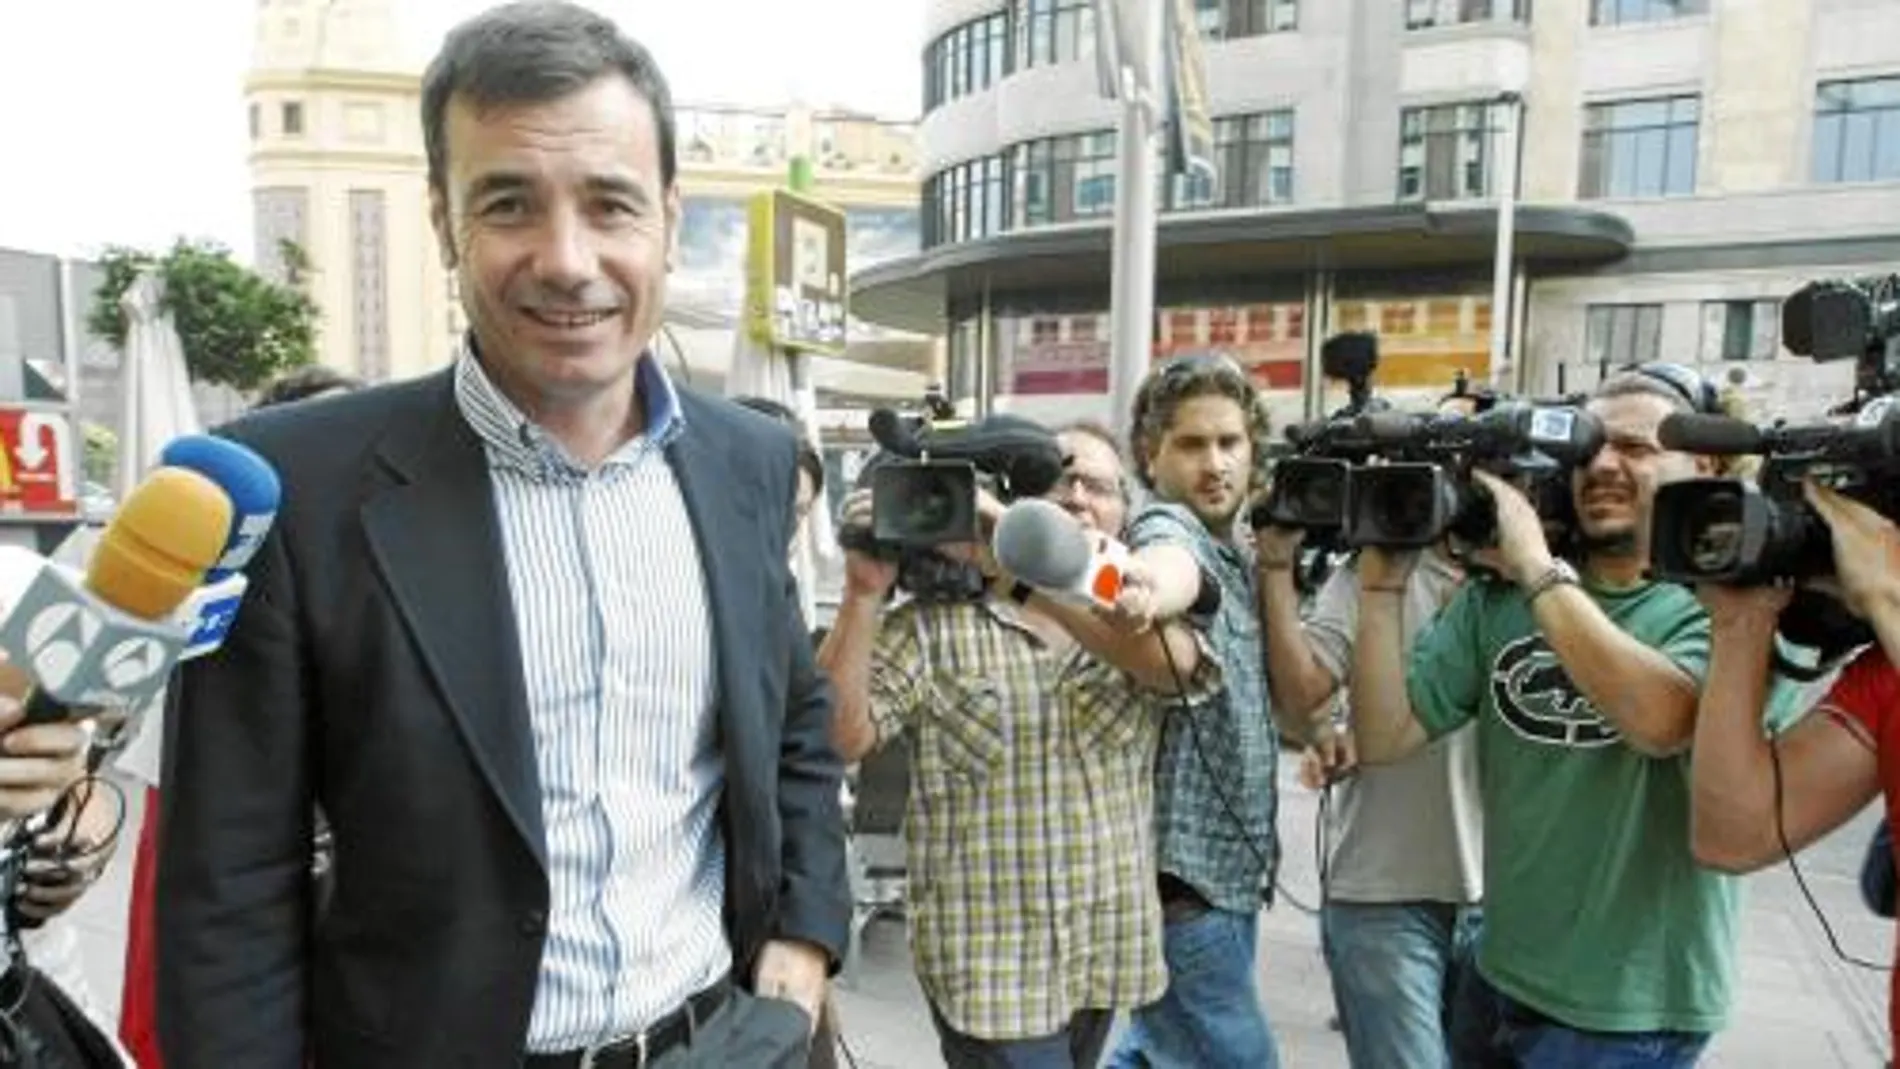 Desde que se conoció su negativa a dejar la candidatura a la Comunidad de Madrid, Gómez ha acaparado portadas de diarios e informativos